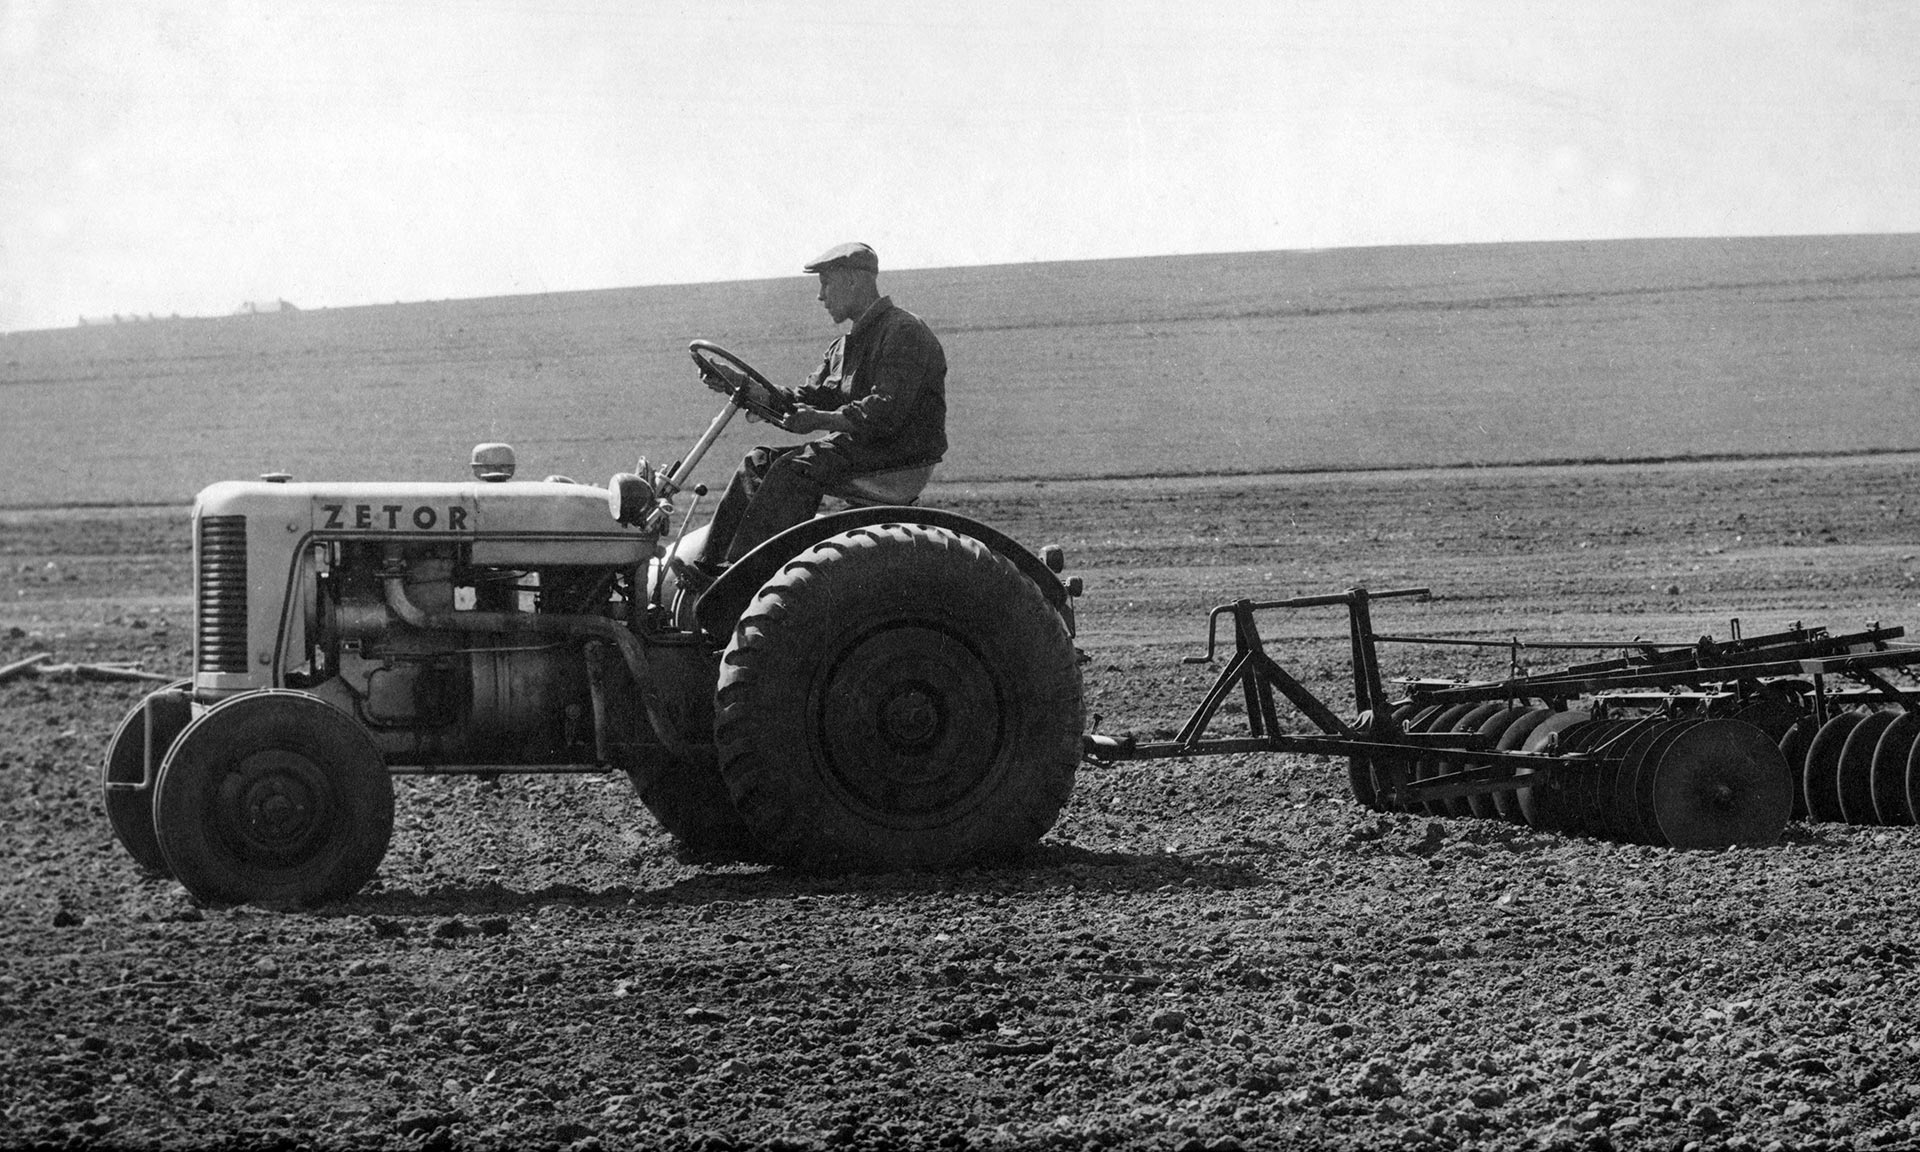 Český výrobce legendárních traktorů Zetor slaví výročí 75 let